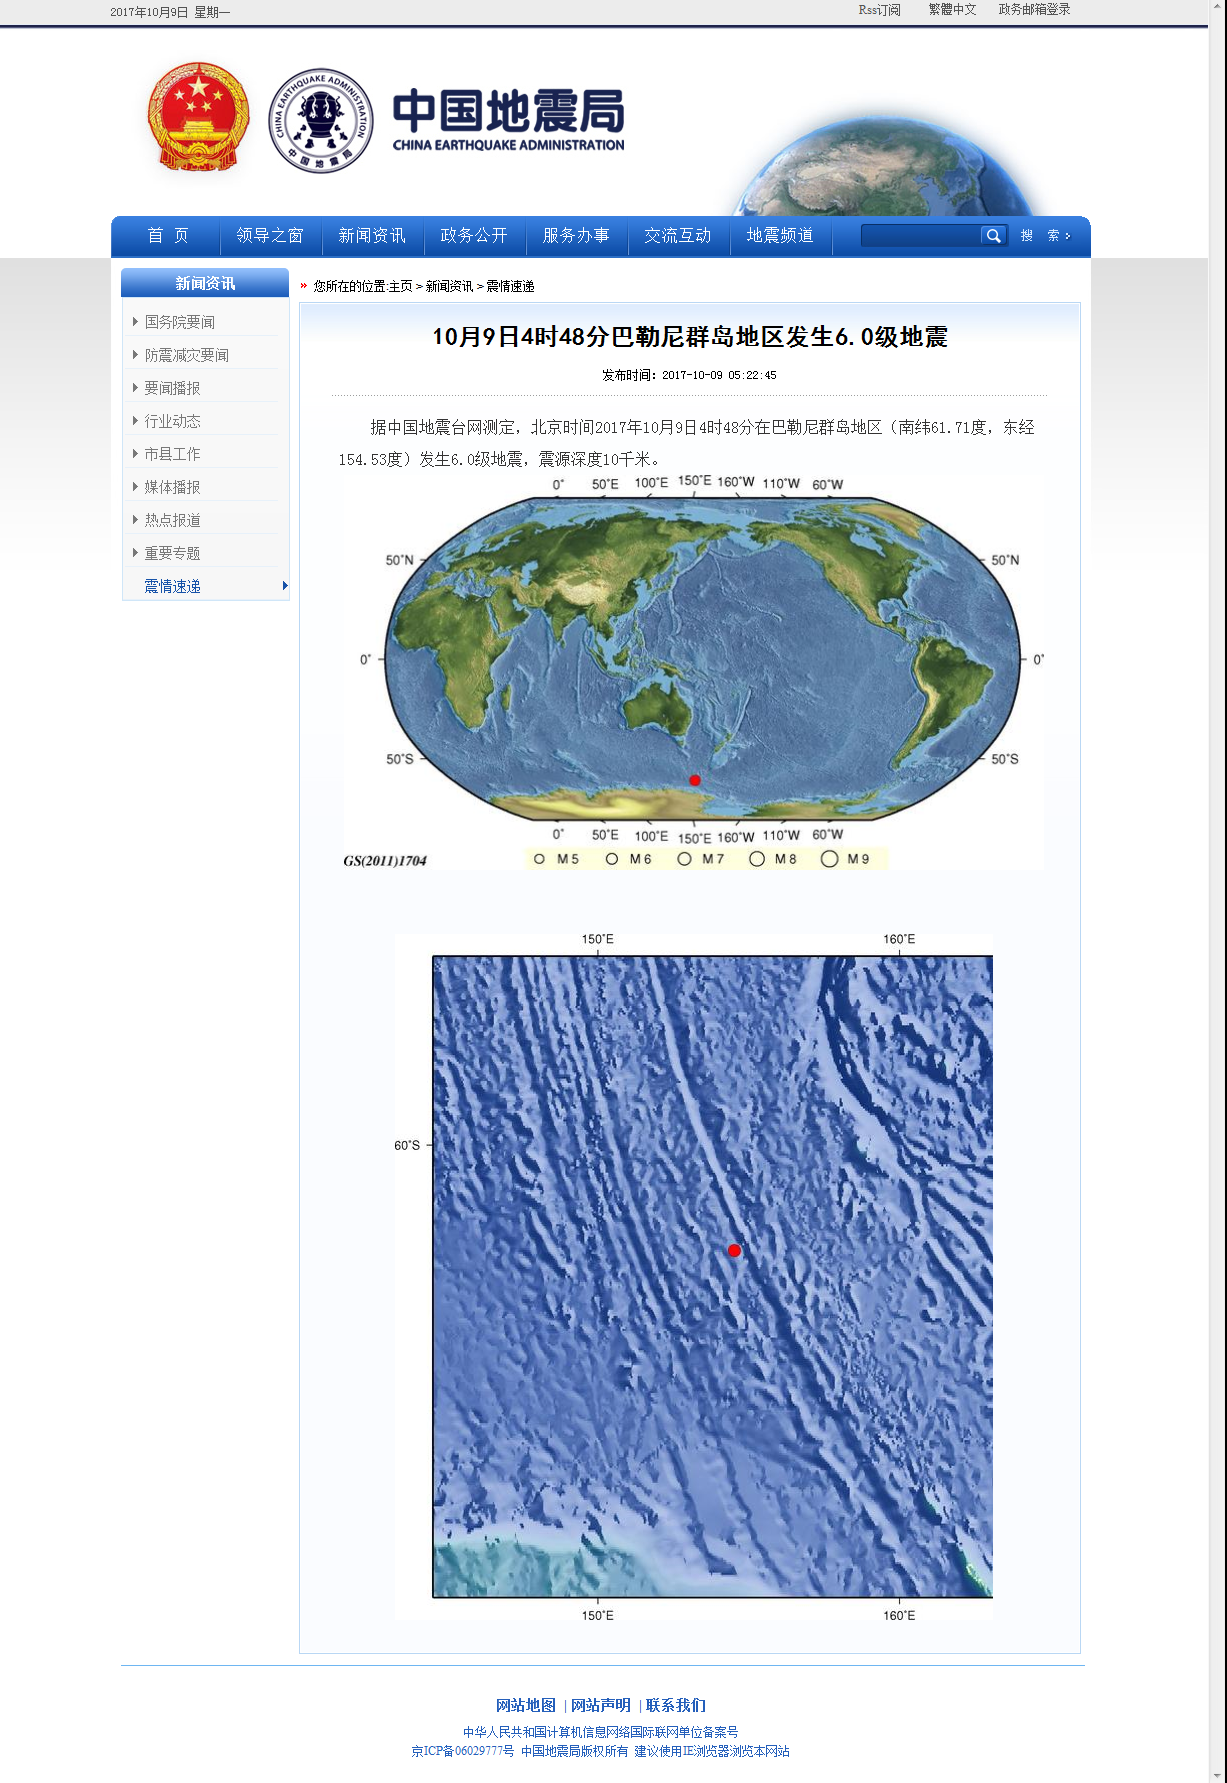 10月9日4时48分巴勒尼群岛地区发生6.0级地震.png